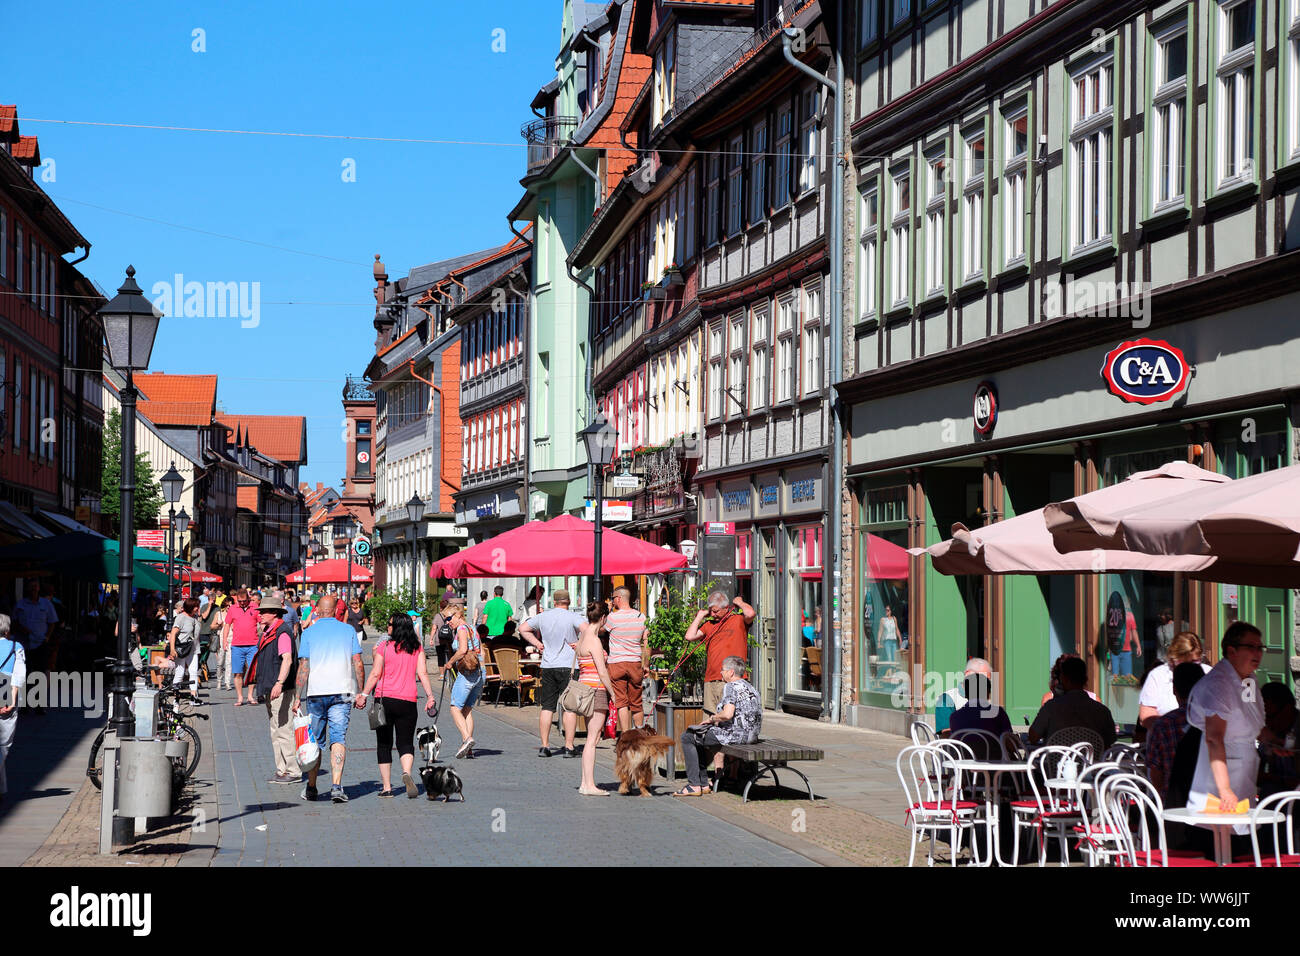 Germany, Saxony-Anhalt, Wernigerode, pedestrian zone Stock Photo